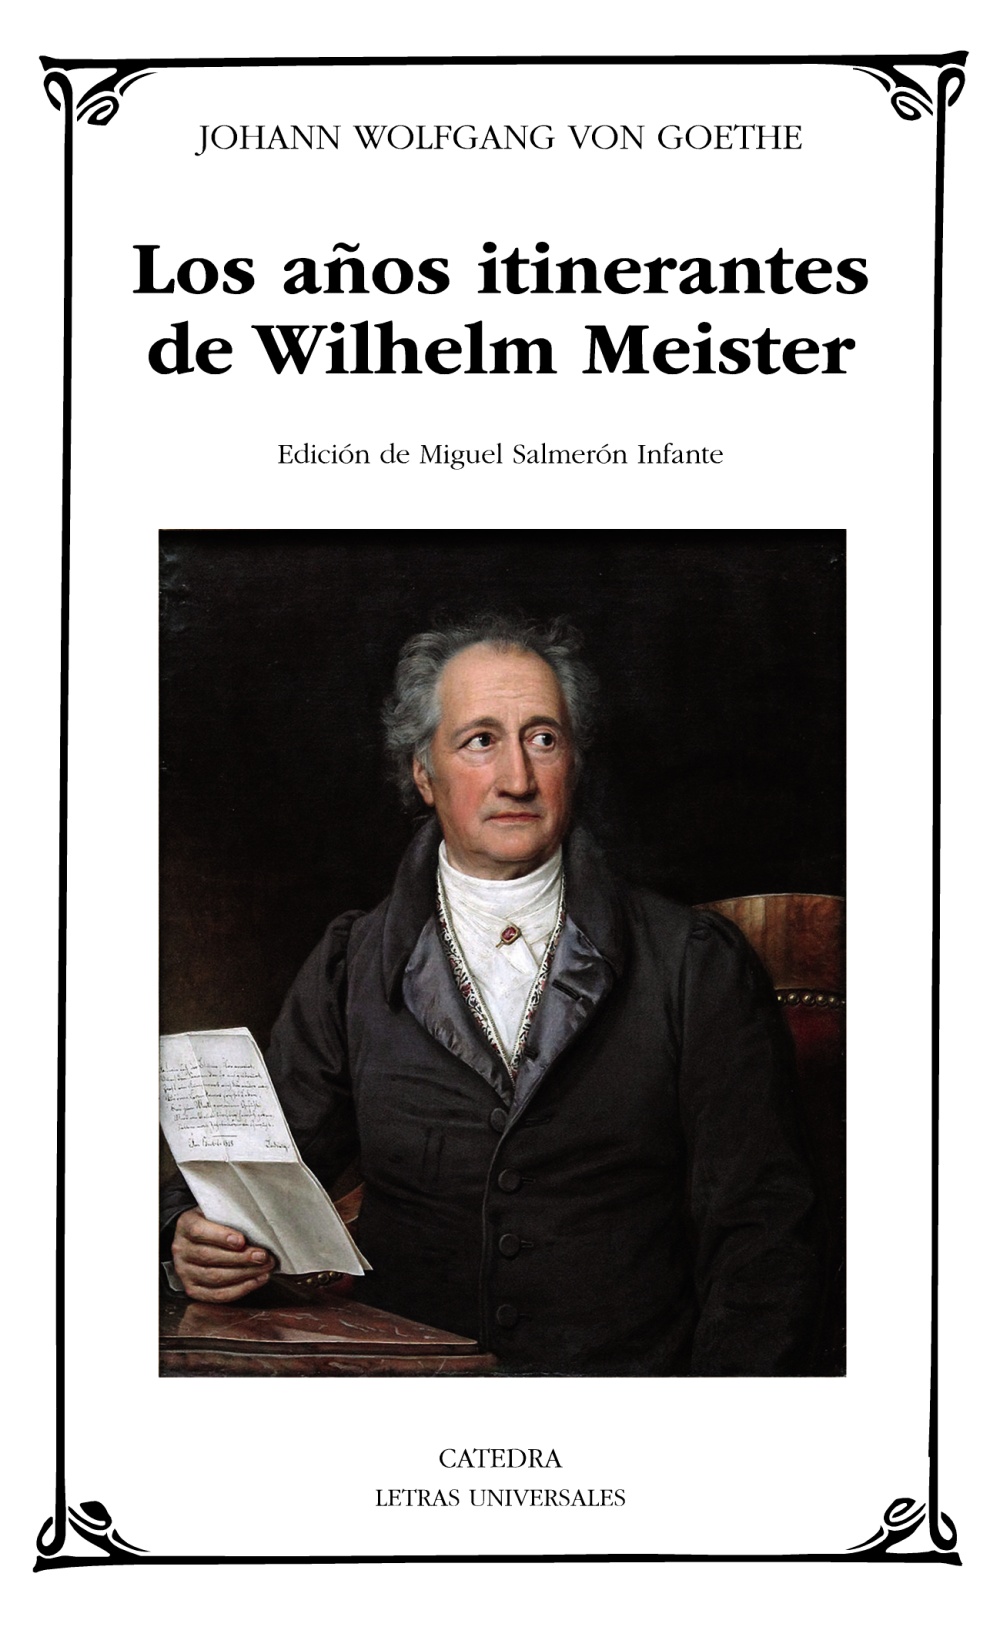 Imagen de portada del libro Los años itinerantes de Wilhelm Meister